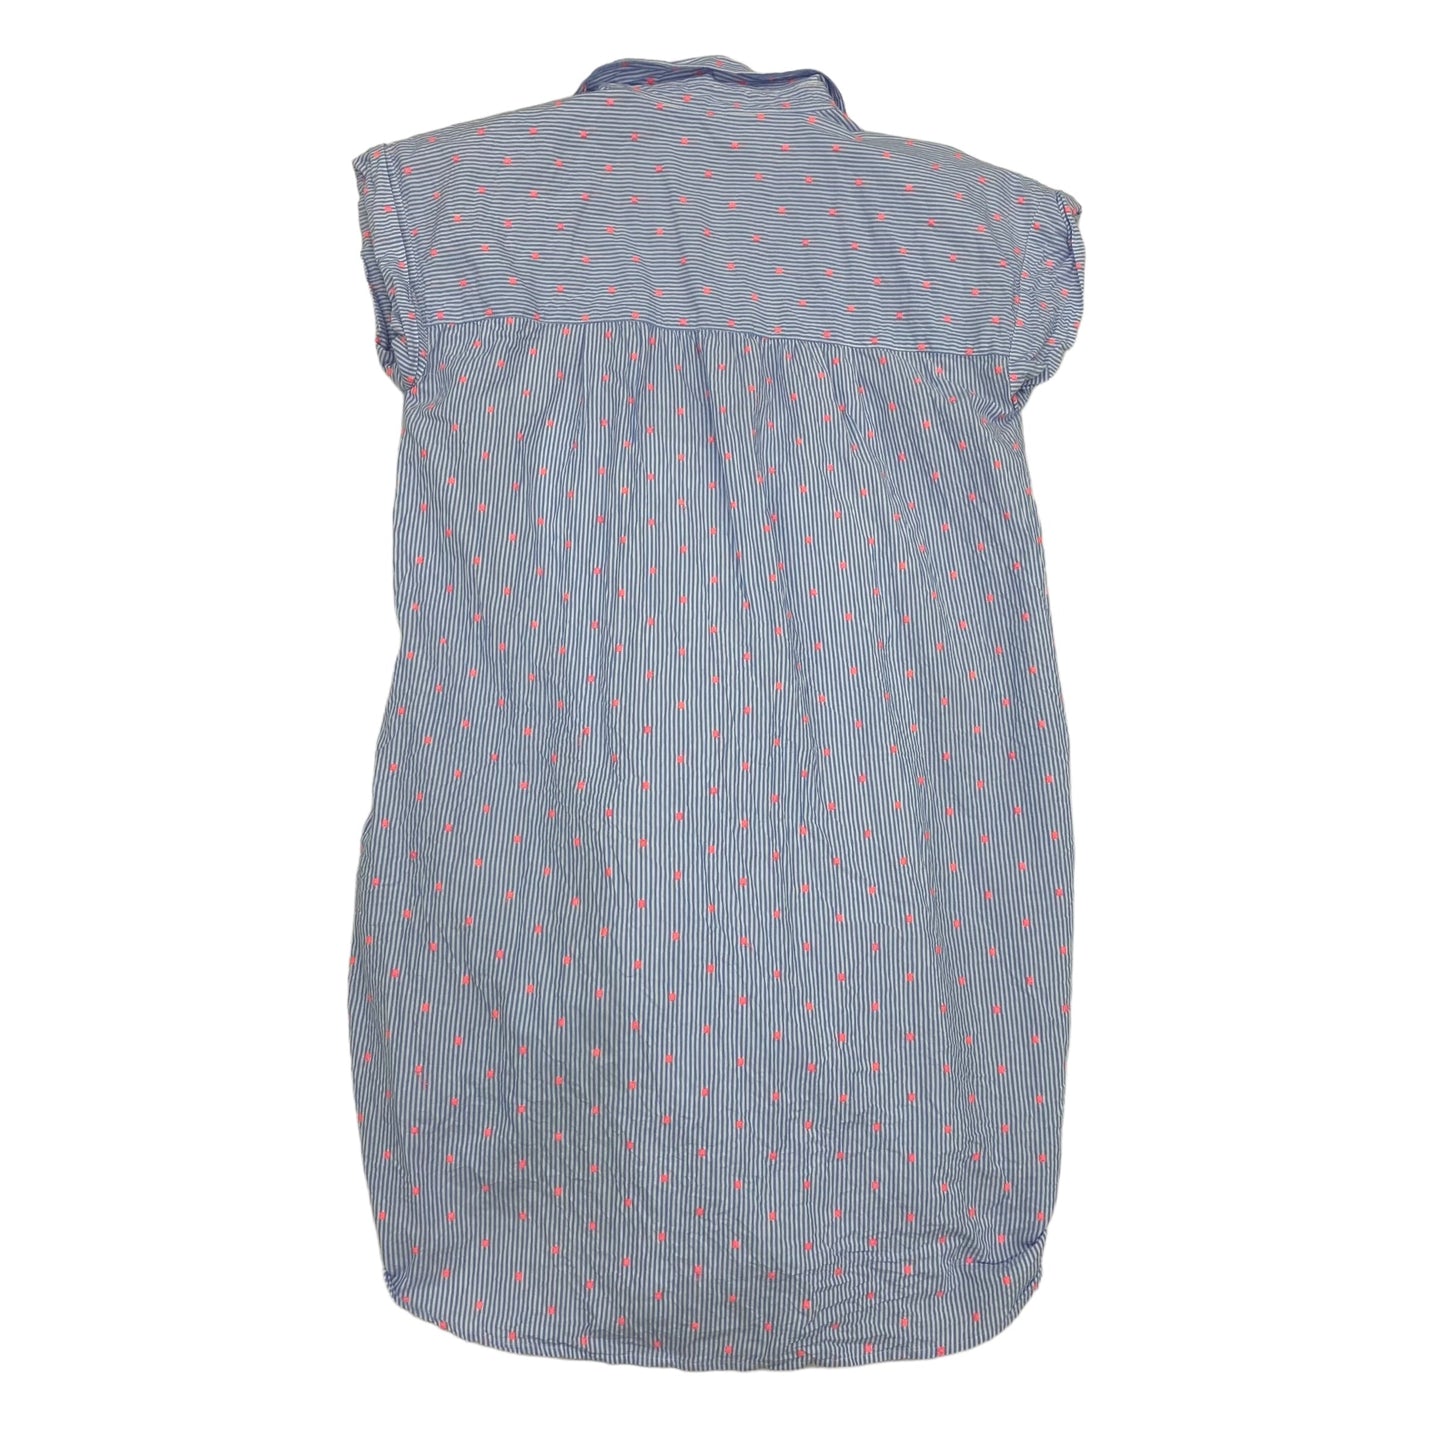 BLUE & WHITE LOFT DRESS CASUAL SHORT, Size S